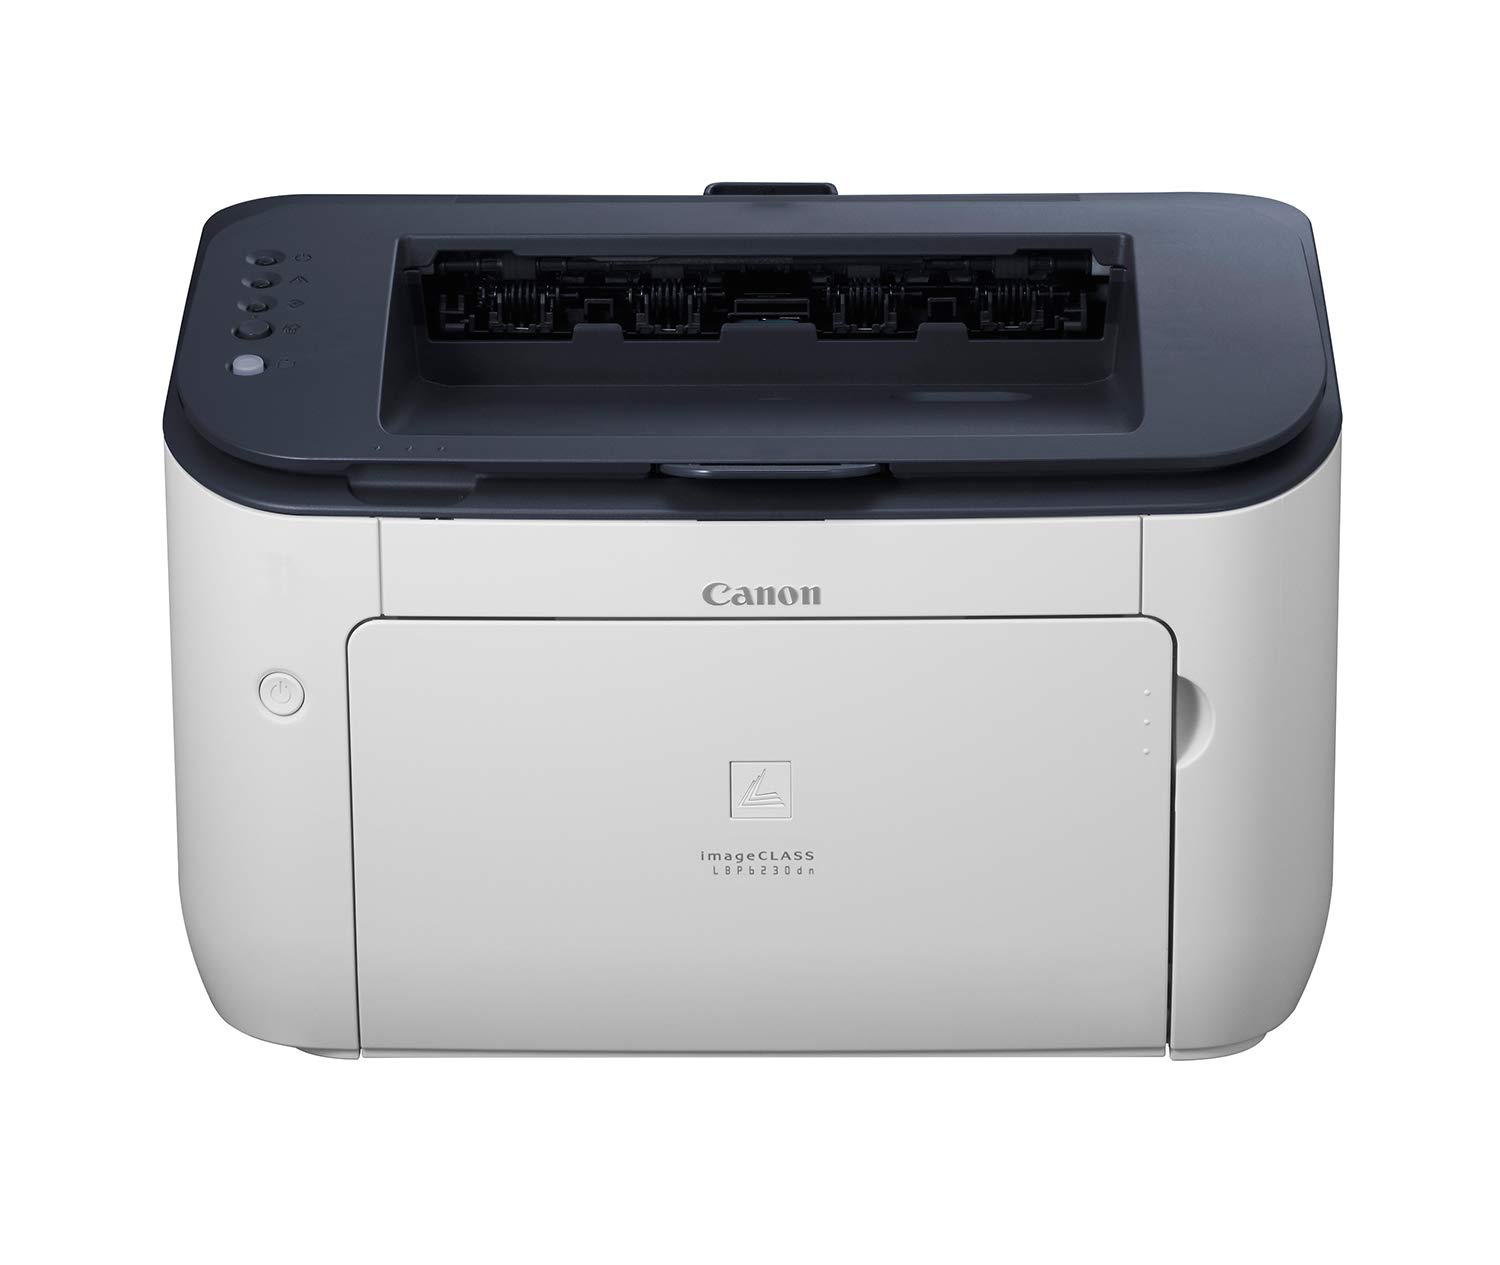 Canon LBP6230DN Image Class Laser Printer